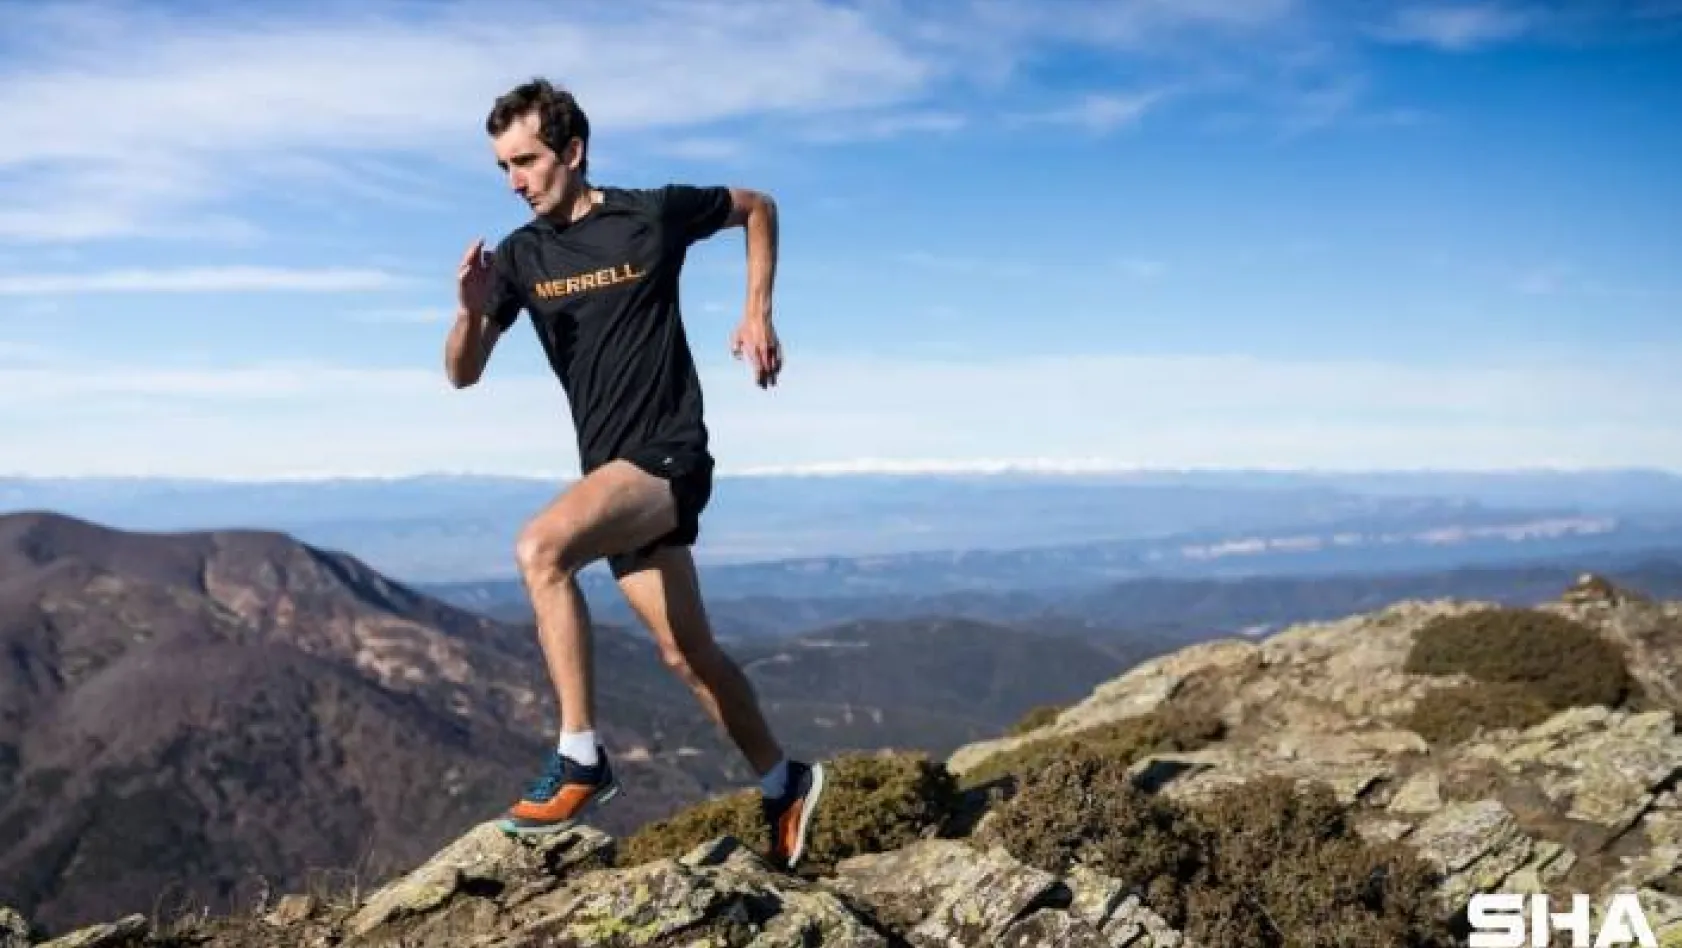 Merrell Alanya Ultra Trail 2021, dünyaca ünlü atletlere ev sahipliği yapacak